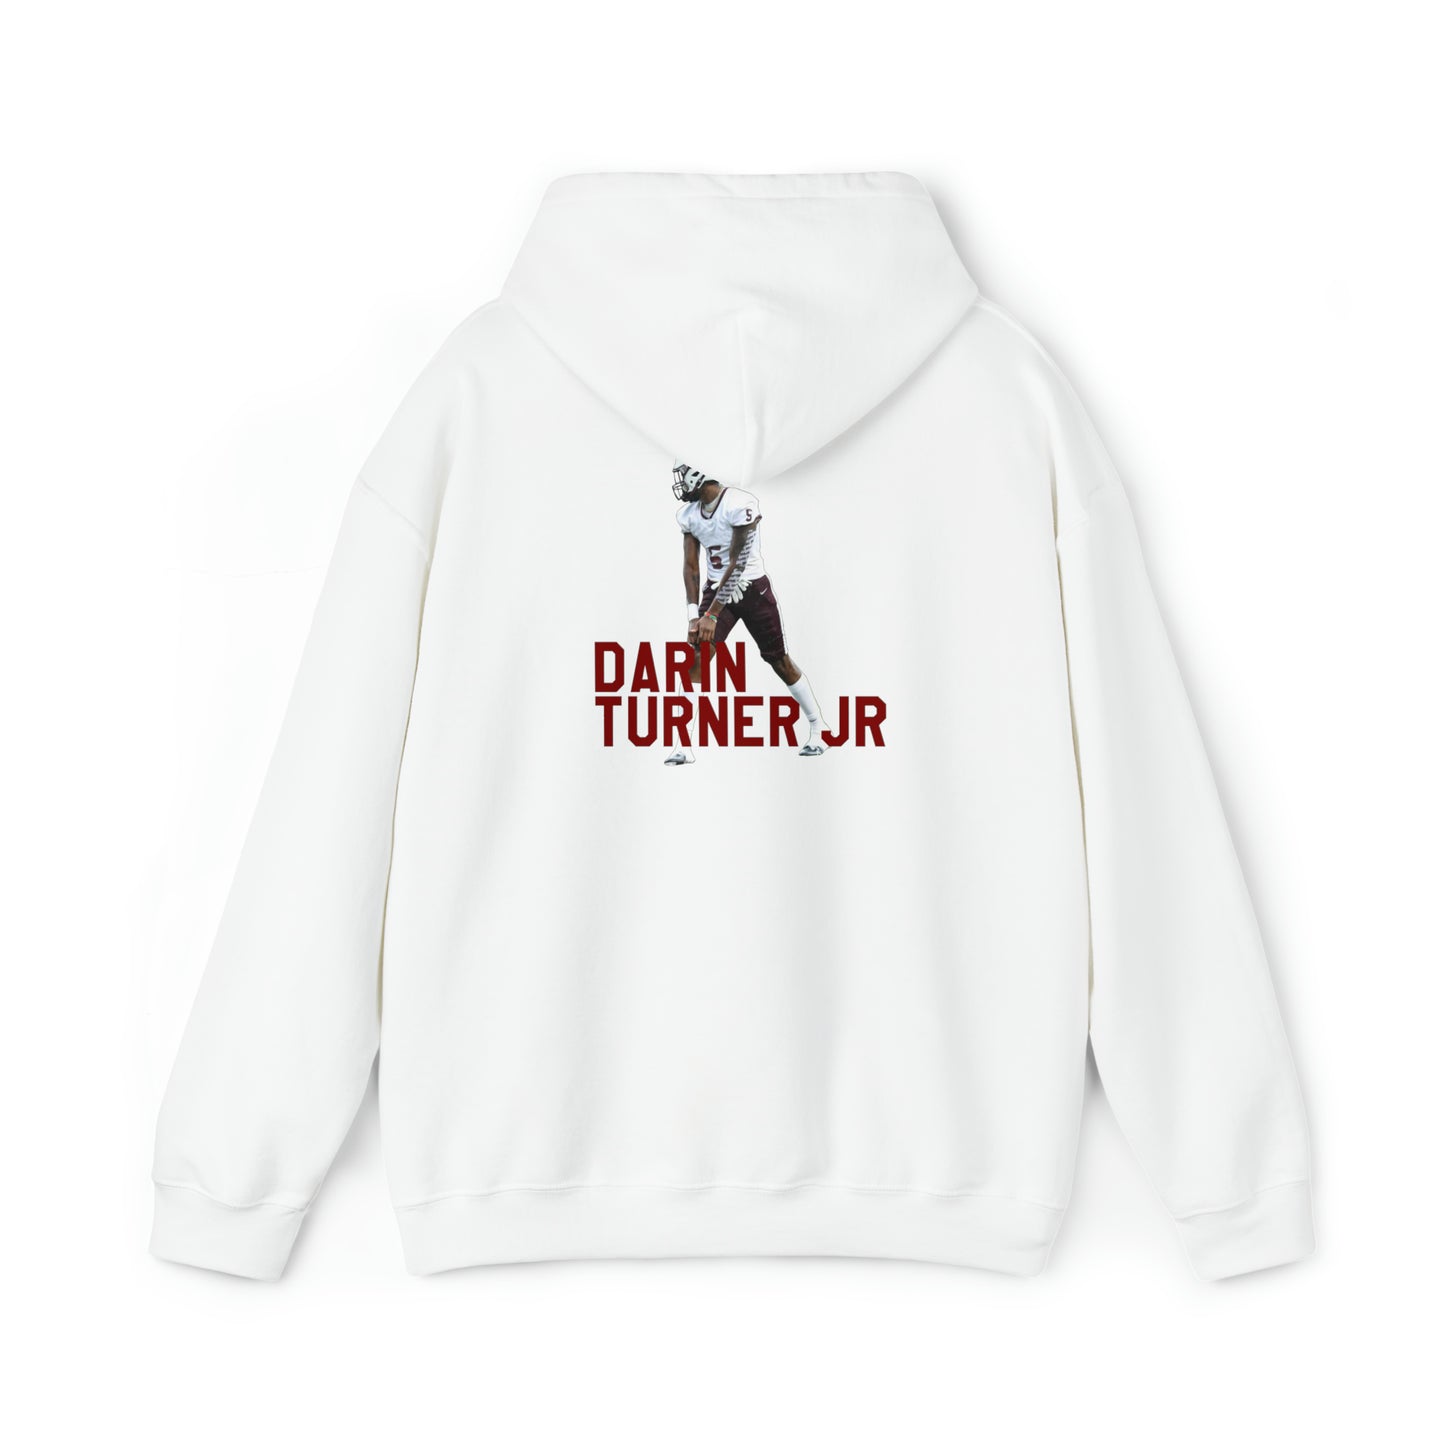 Darin Turner Jr.: Essential Sweatshirt